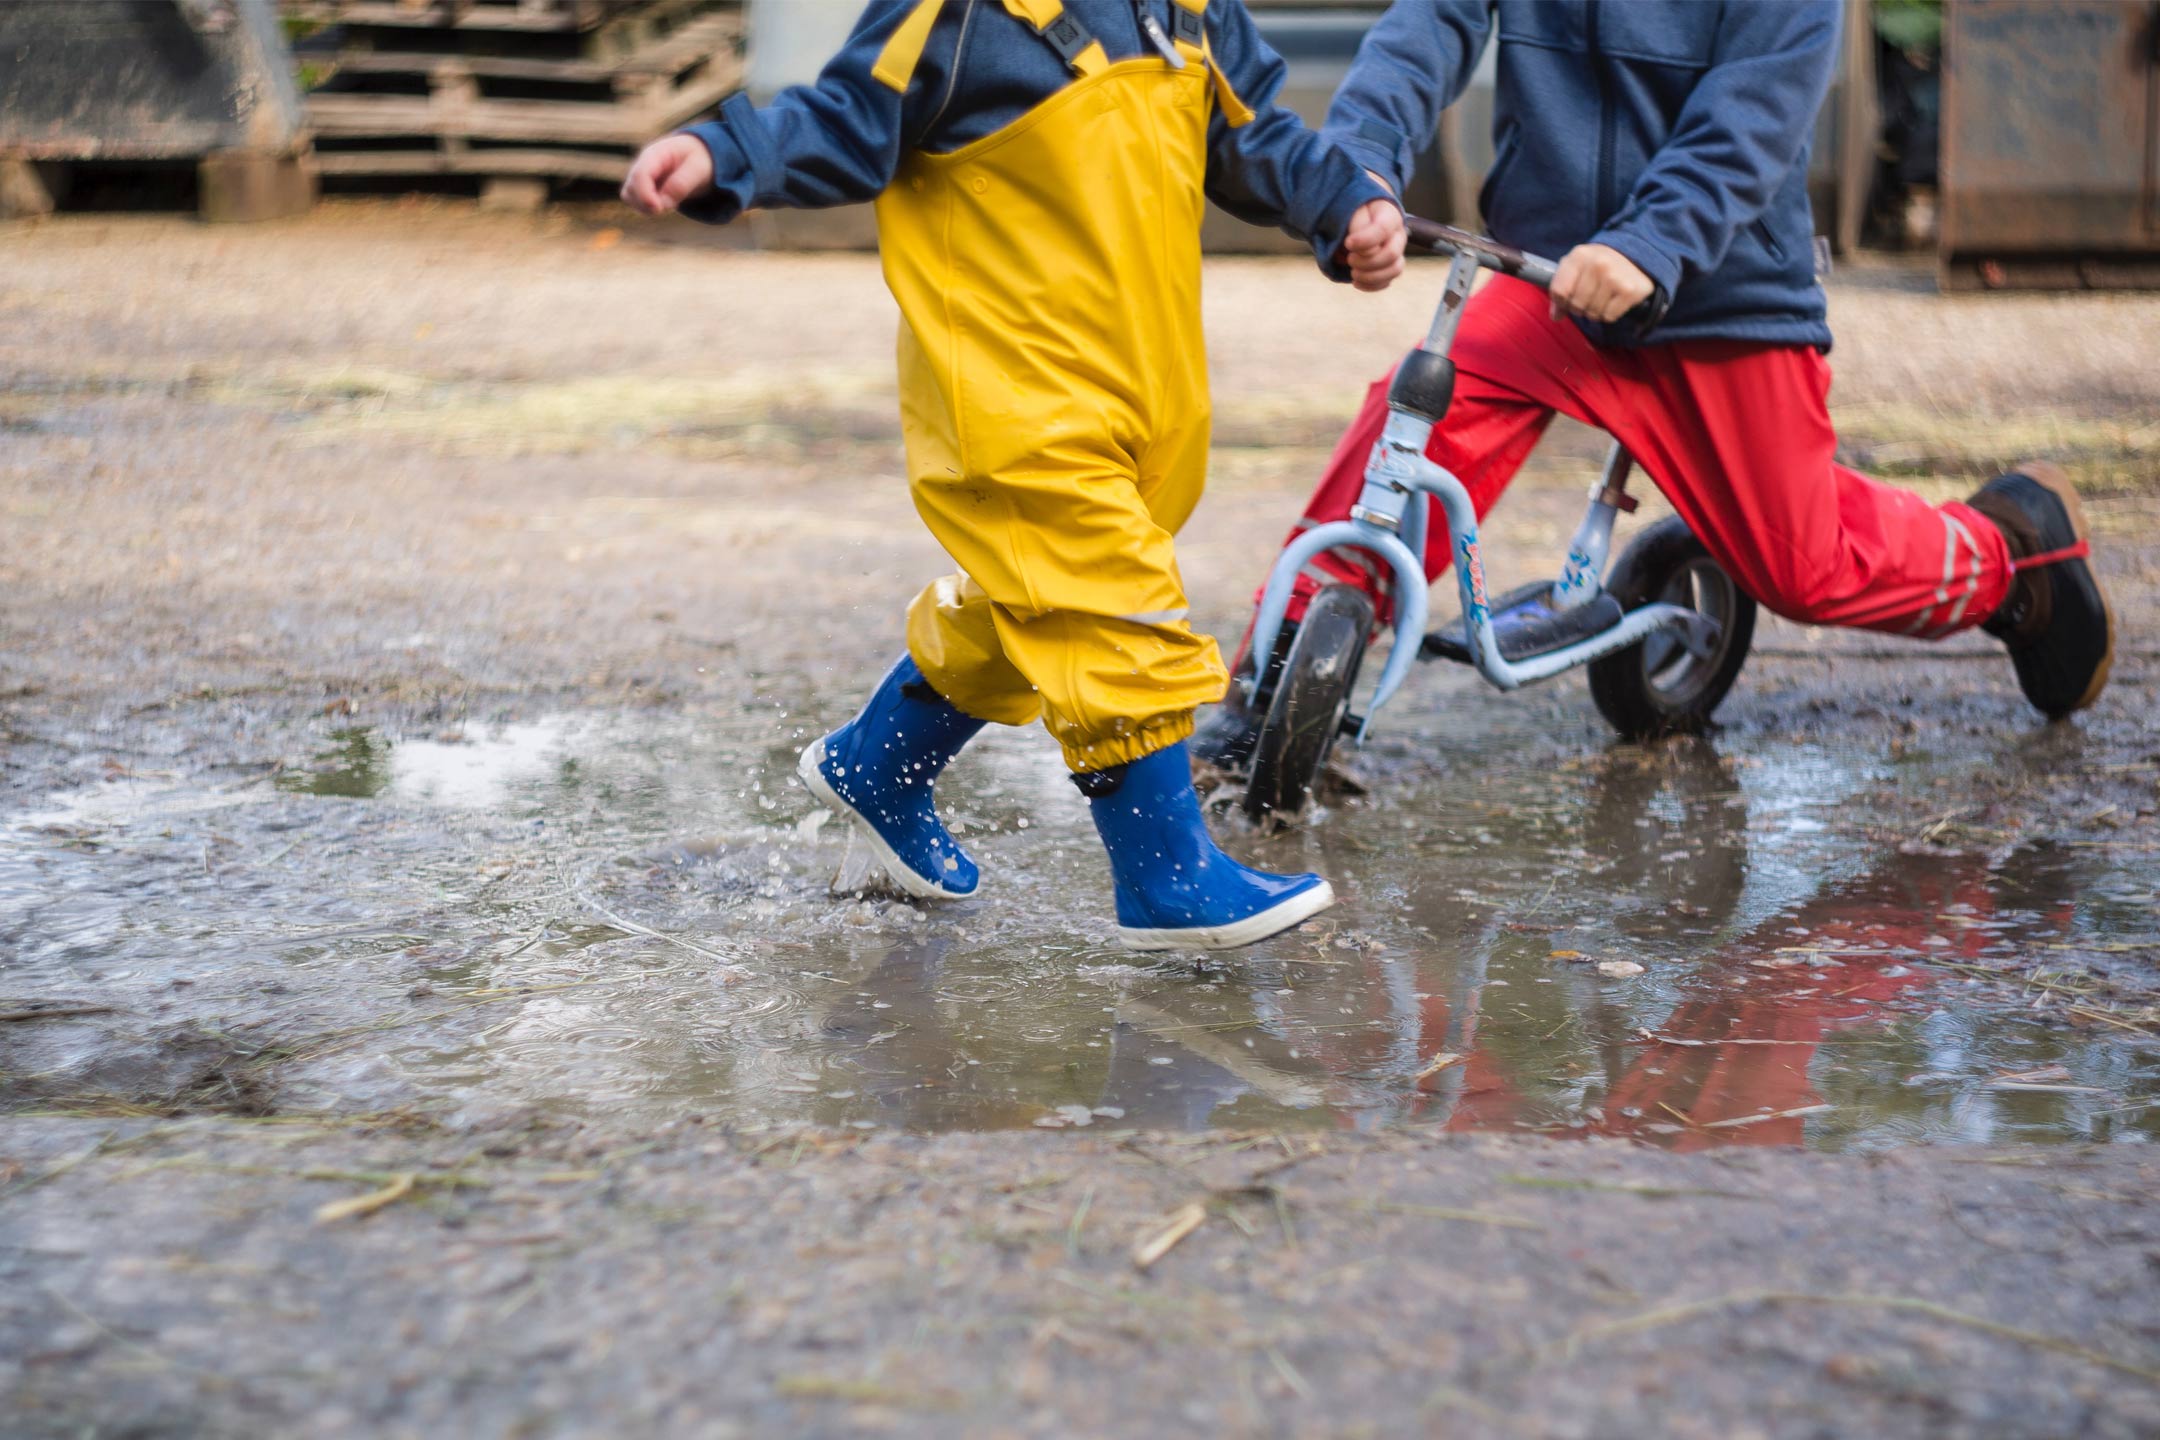 kids-bikes-splashing-mud2160